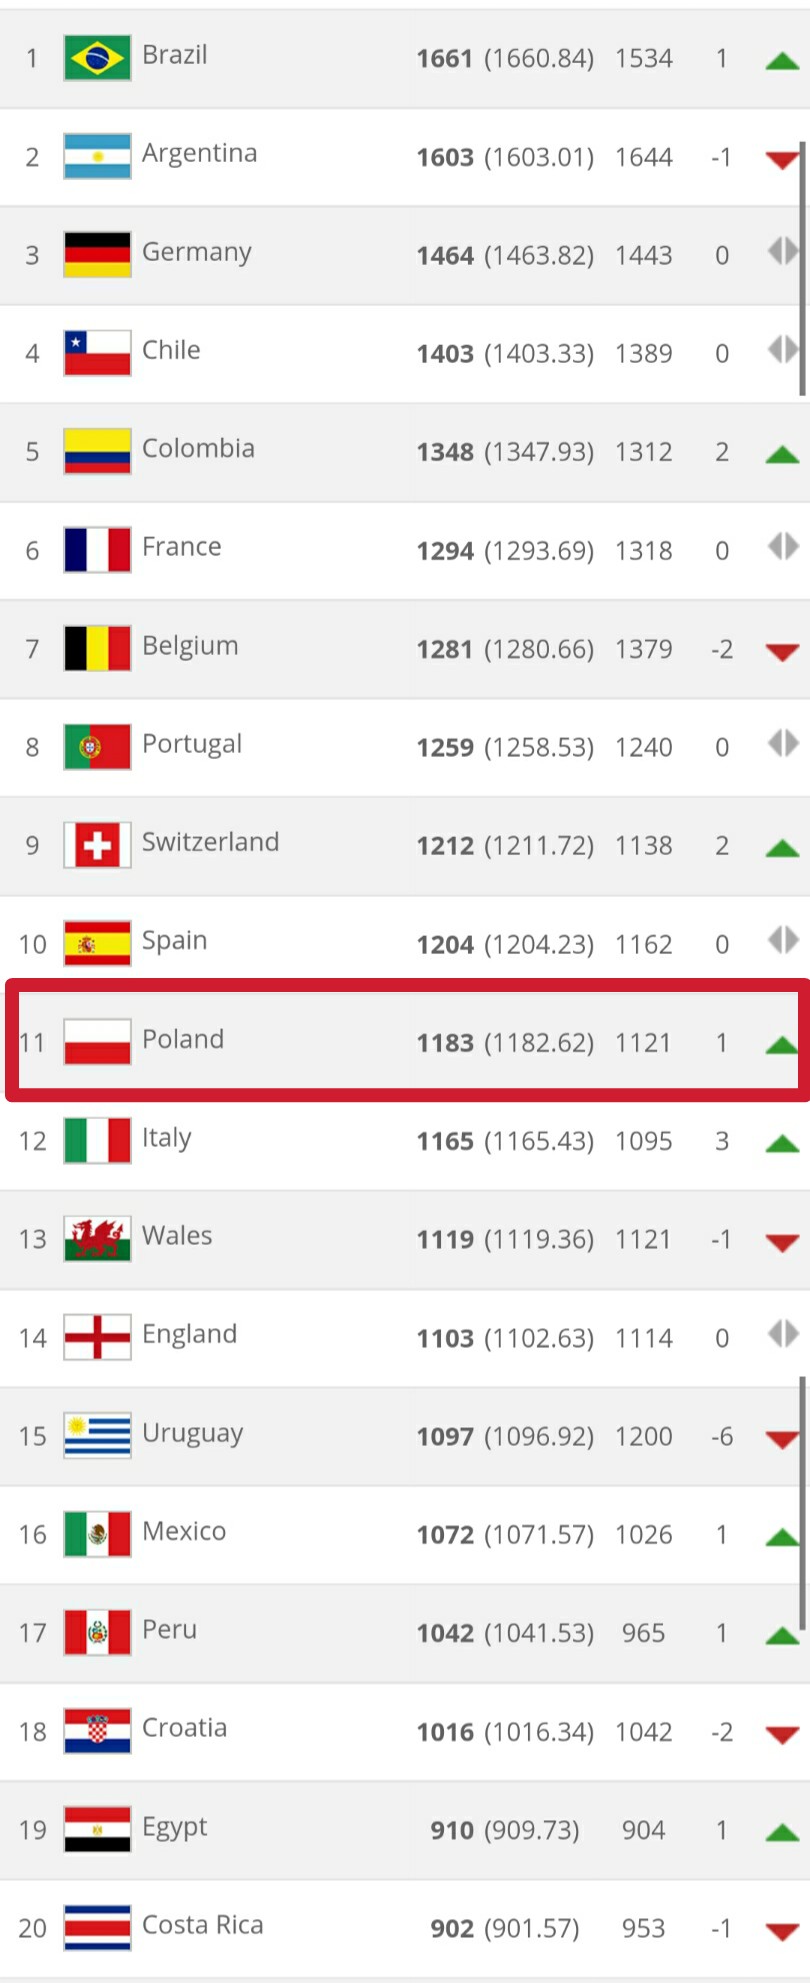 FIFA世界排名公布,波兰世界第11再次创造历史